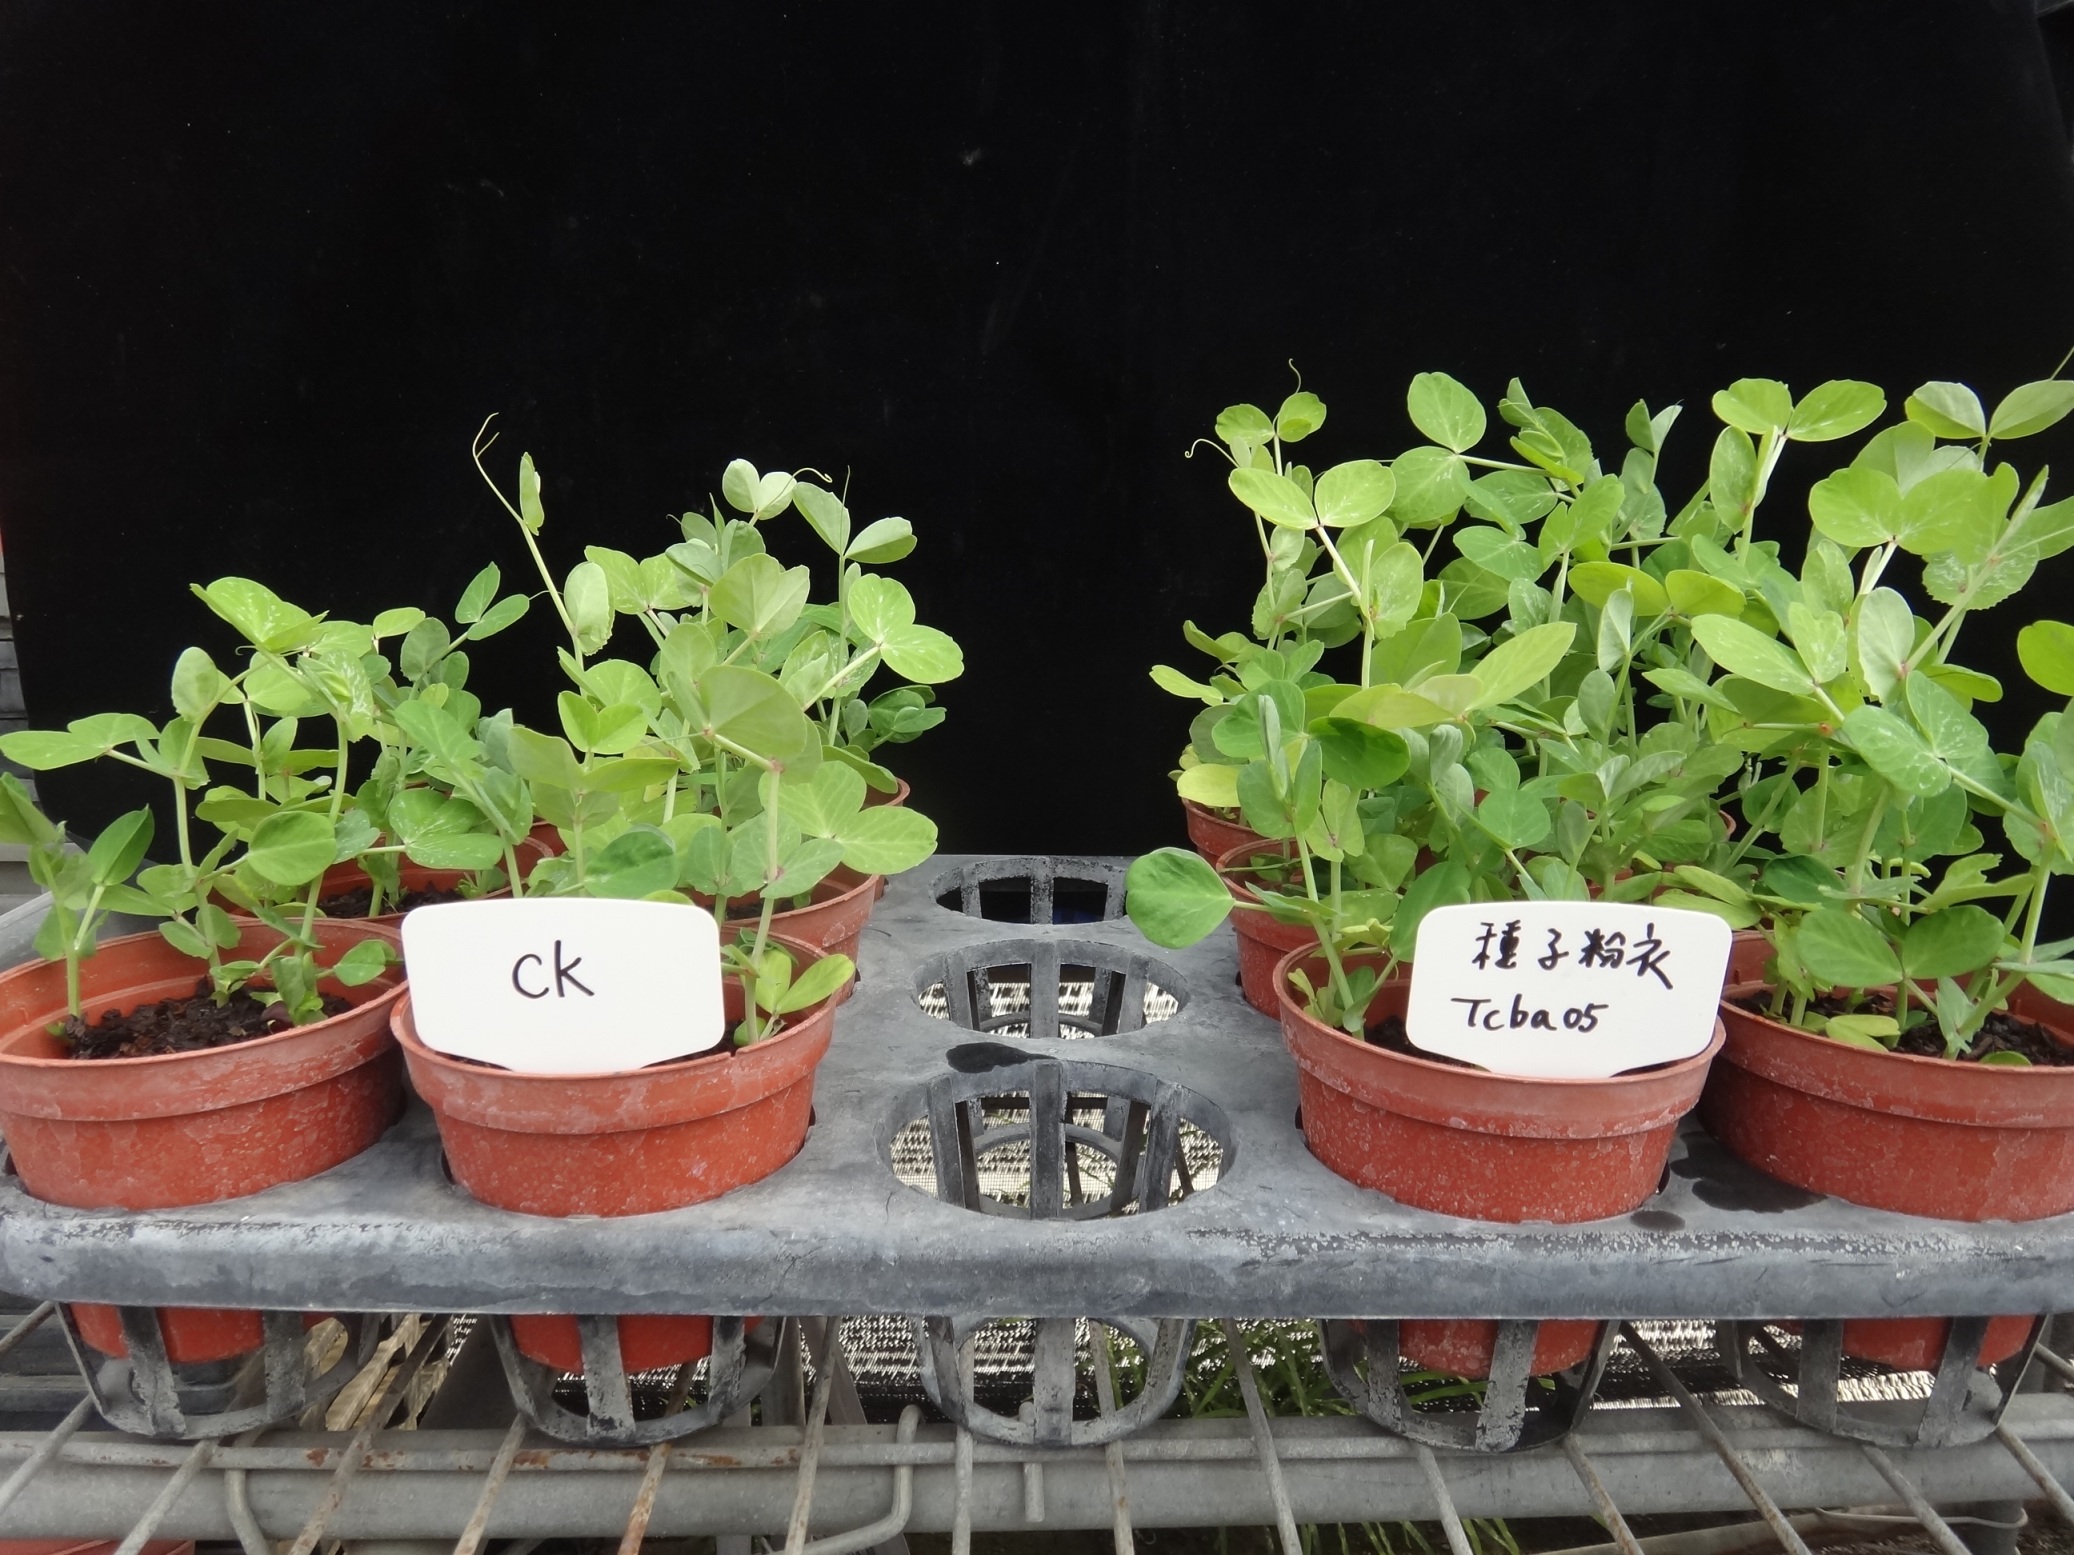 液化澱粉芽孢桿菌 Tcba05 可促進豆類種子發芽率及植株生長。 ( 左：對照組、右：處理組 ) 